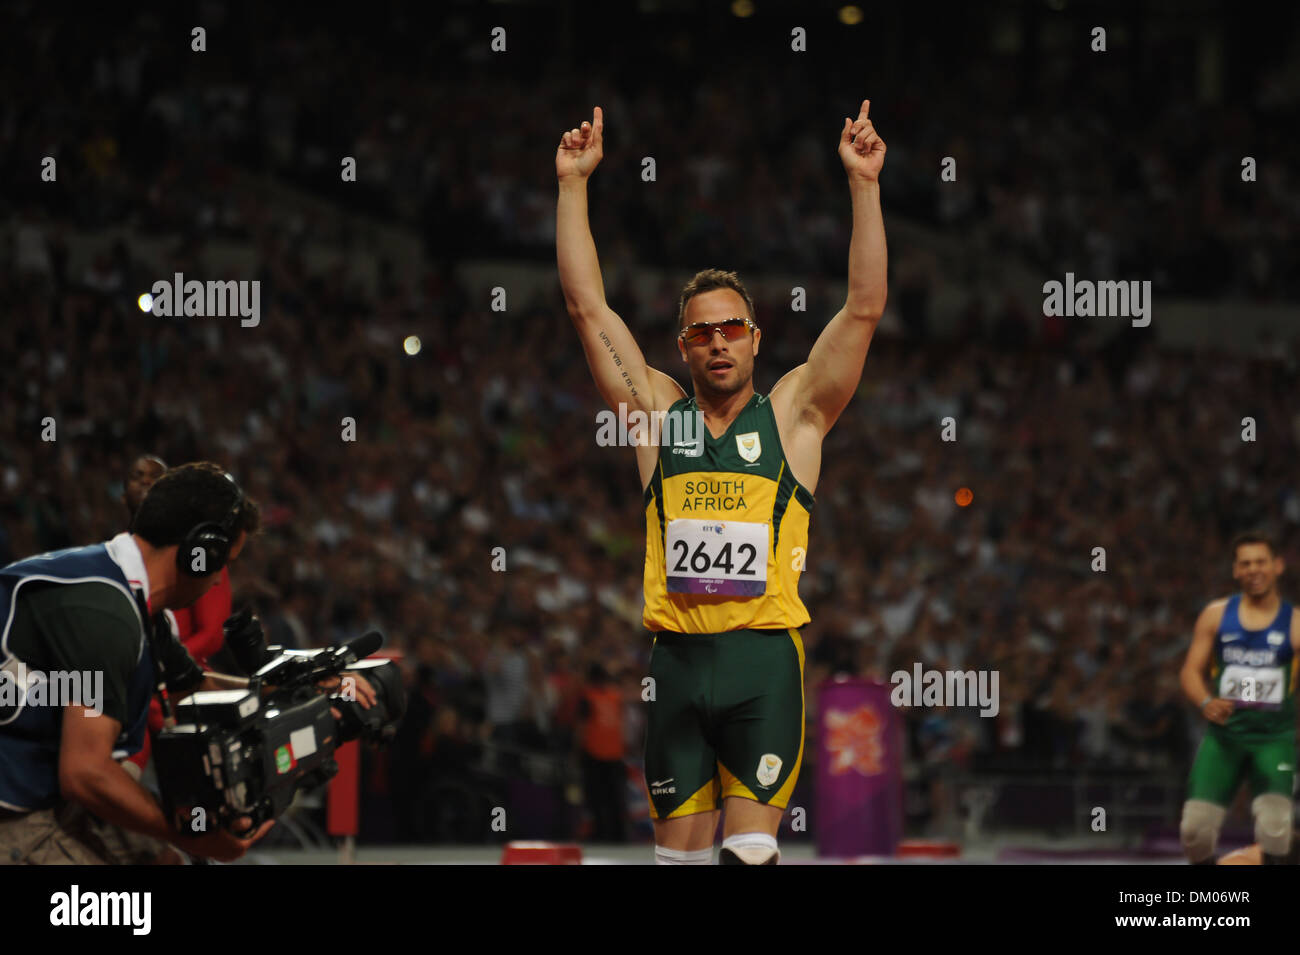 Oscar Pistorius (Afrique du Sud) remporte l'or men's 400m T44 dernière au stade Olympique Londres Angleterre - 08.09.12 Banque D'Images